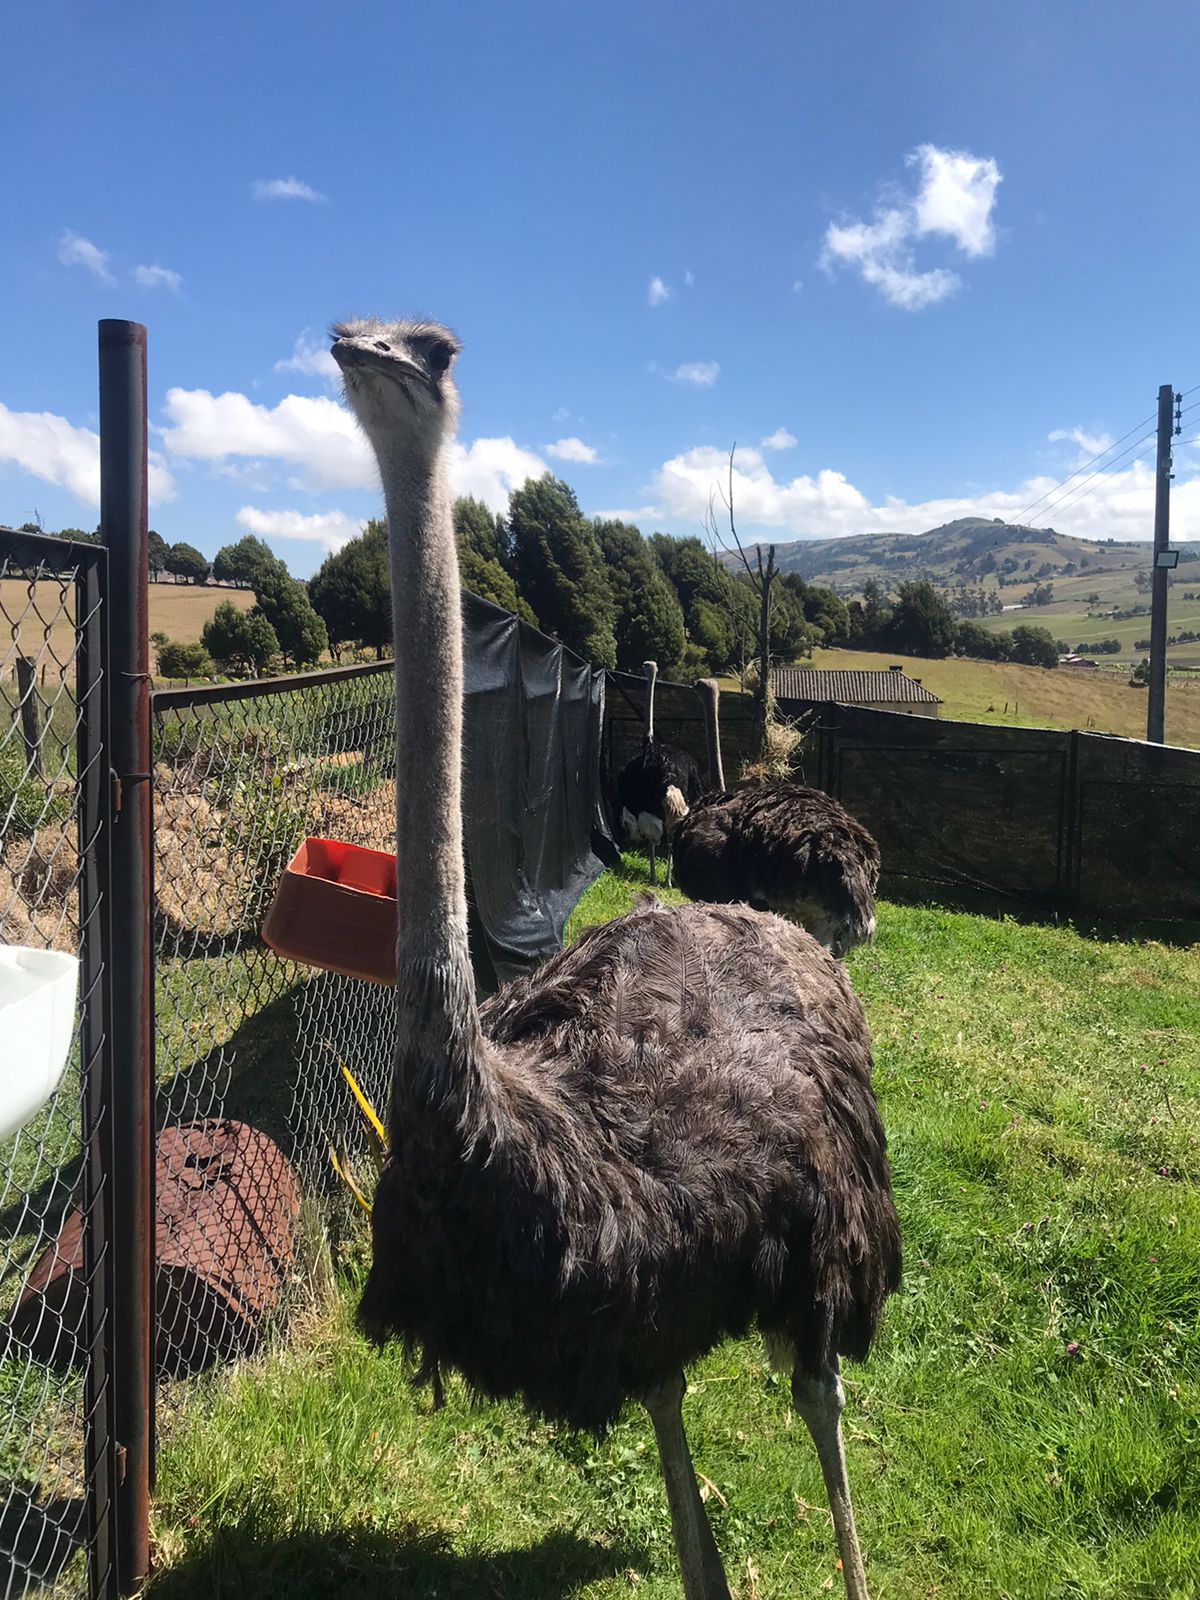 Tres avestruces fueron rescatadas del tráfico ilegal y trasladadas al hogar de paso de la Juan en Tunja